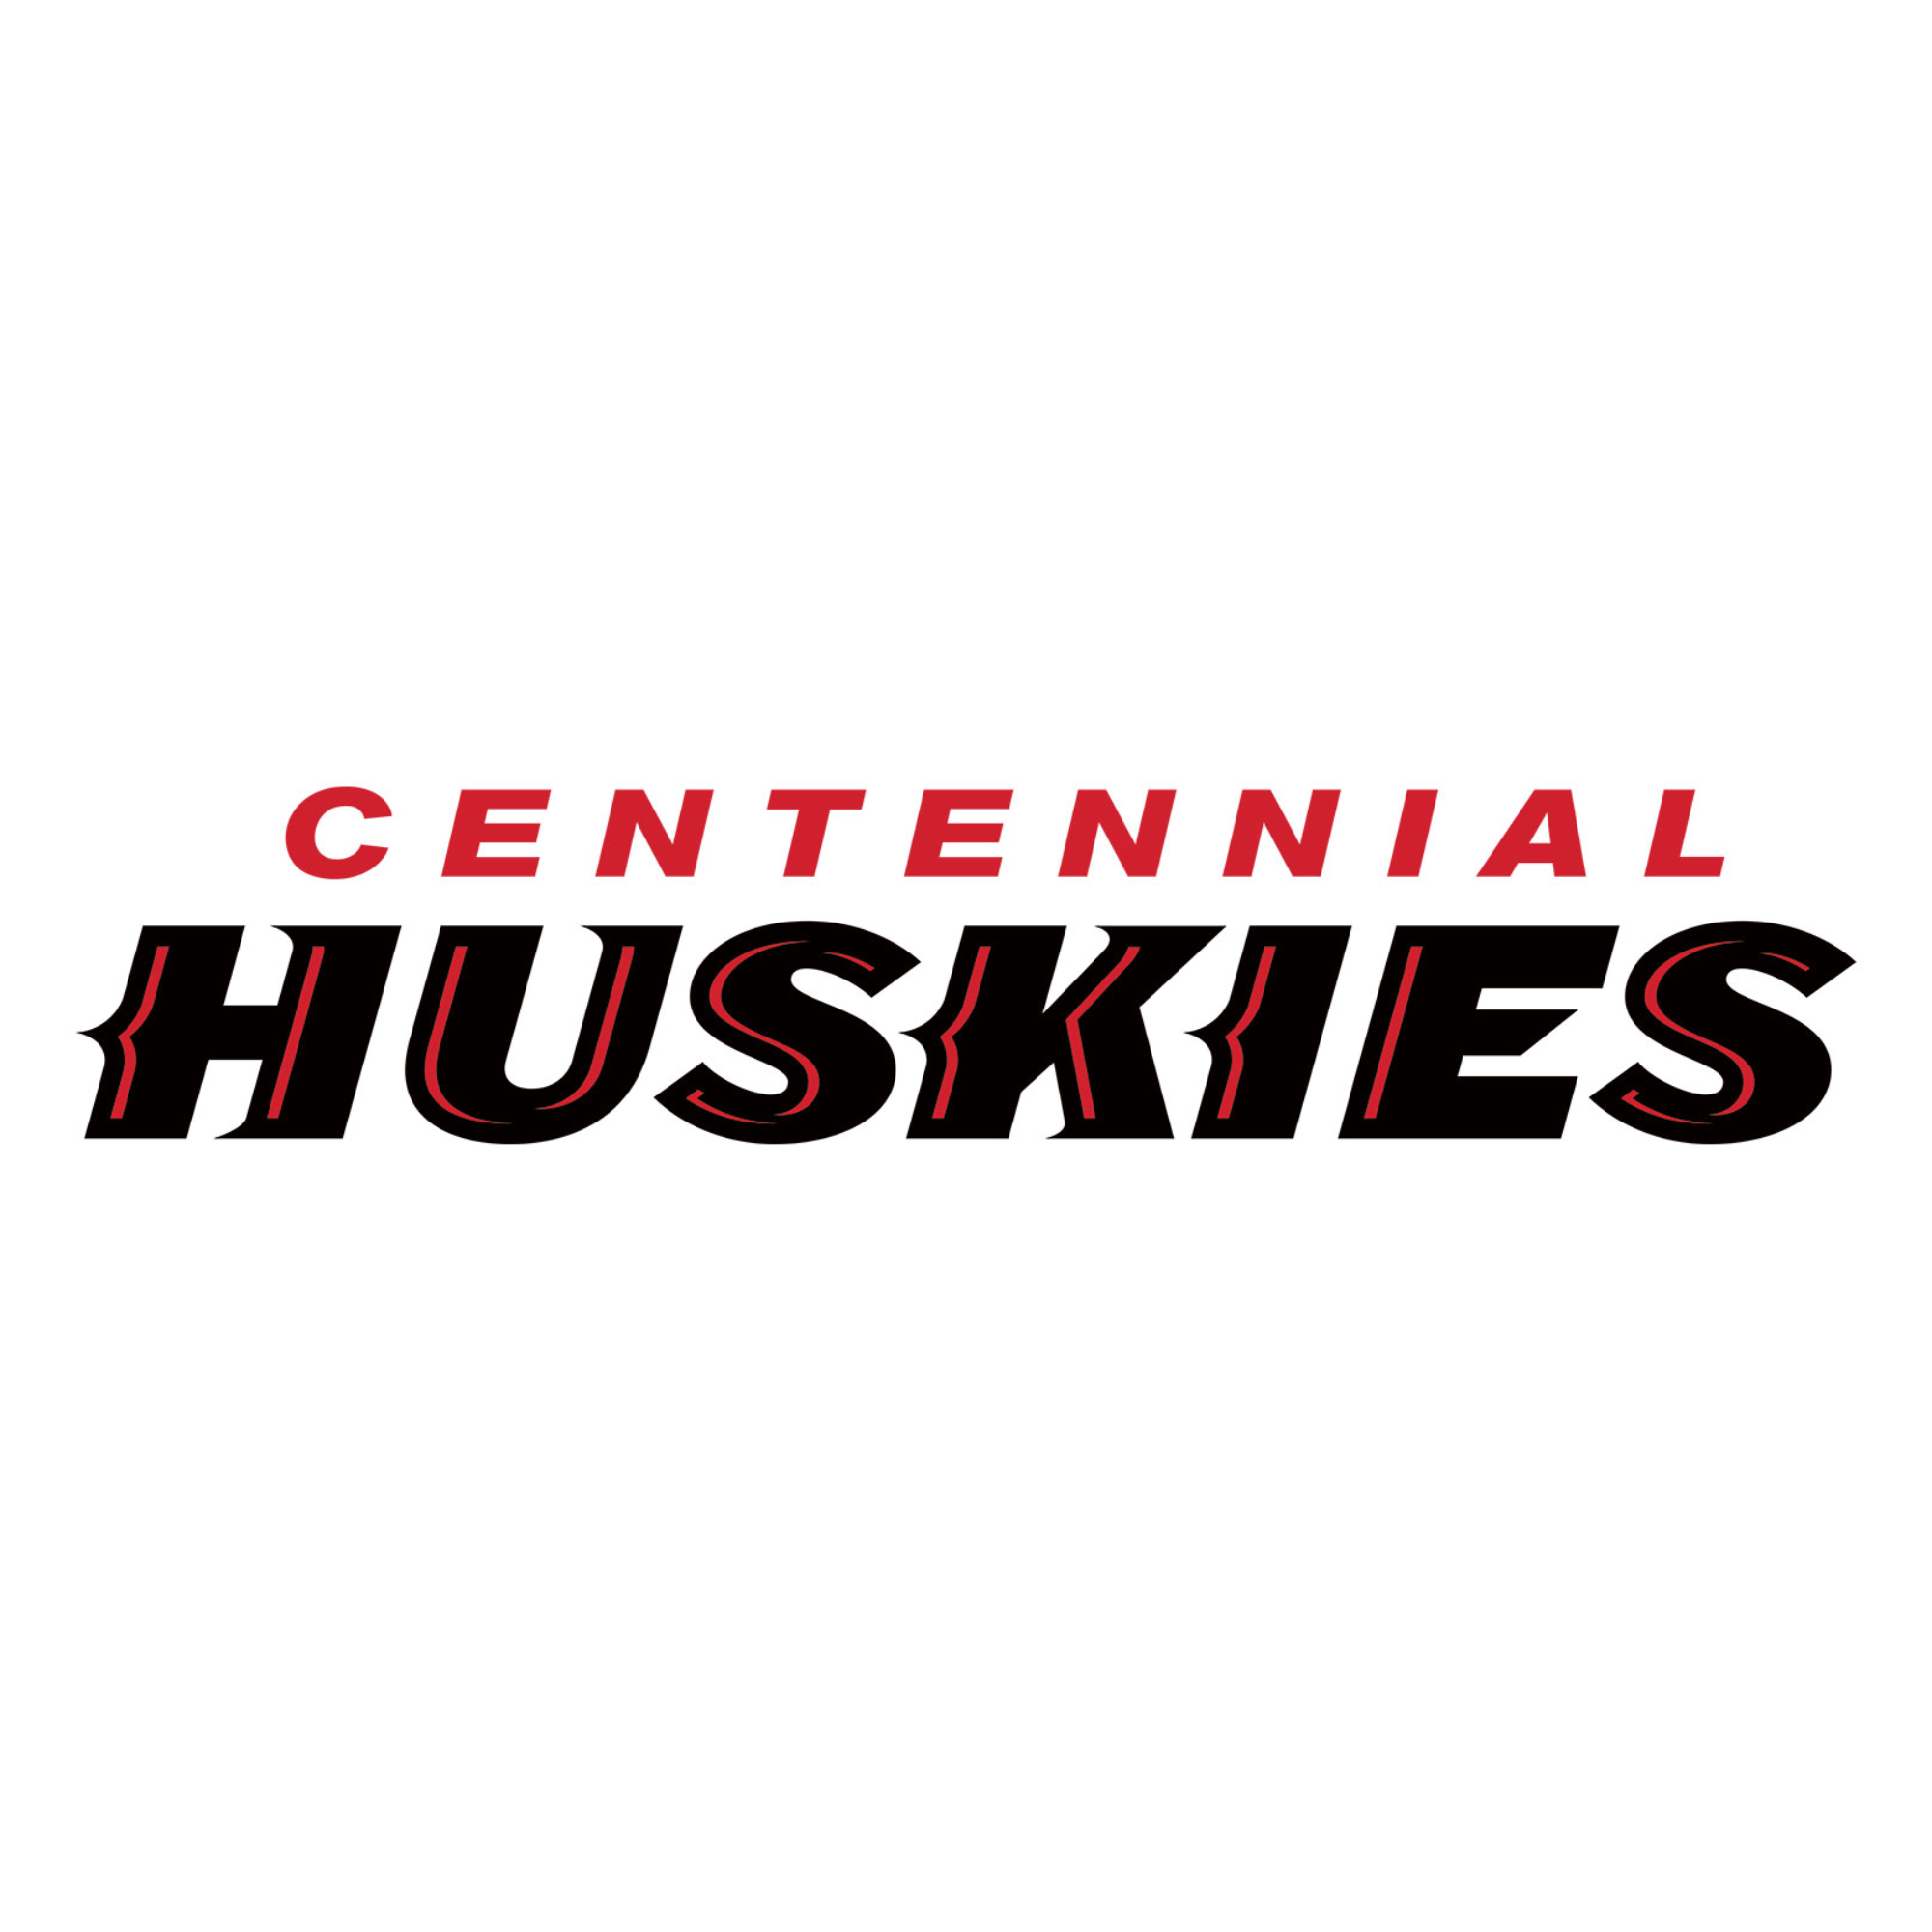 The official logo of Corona Centennial